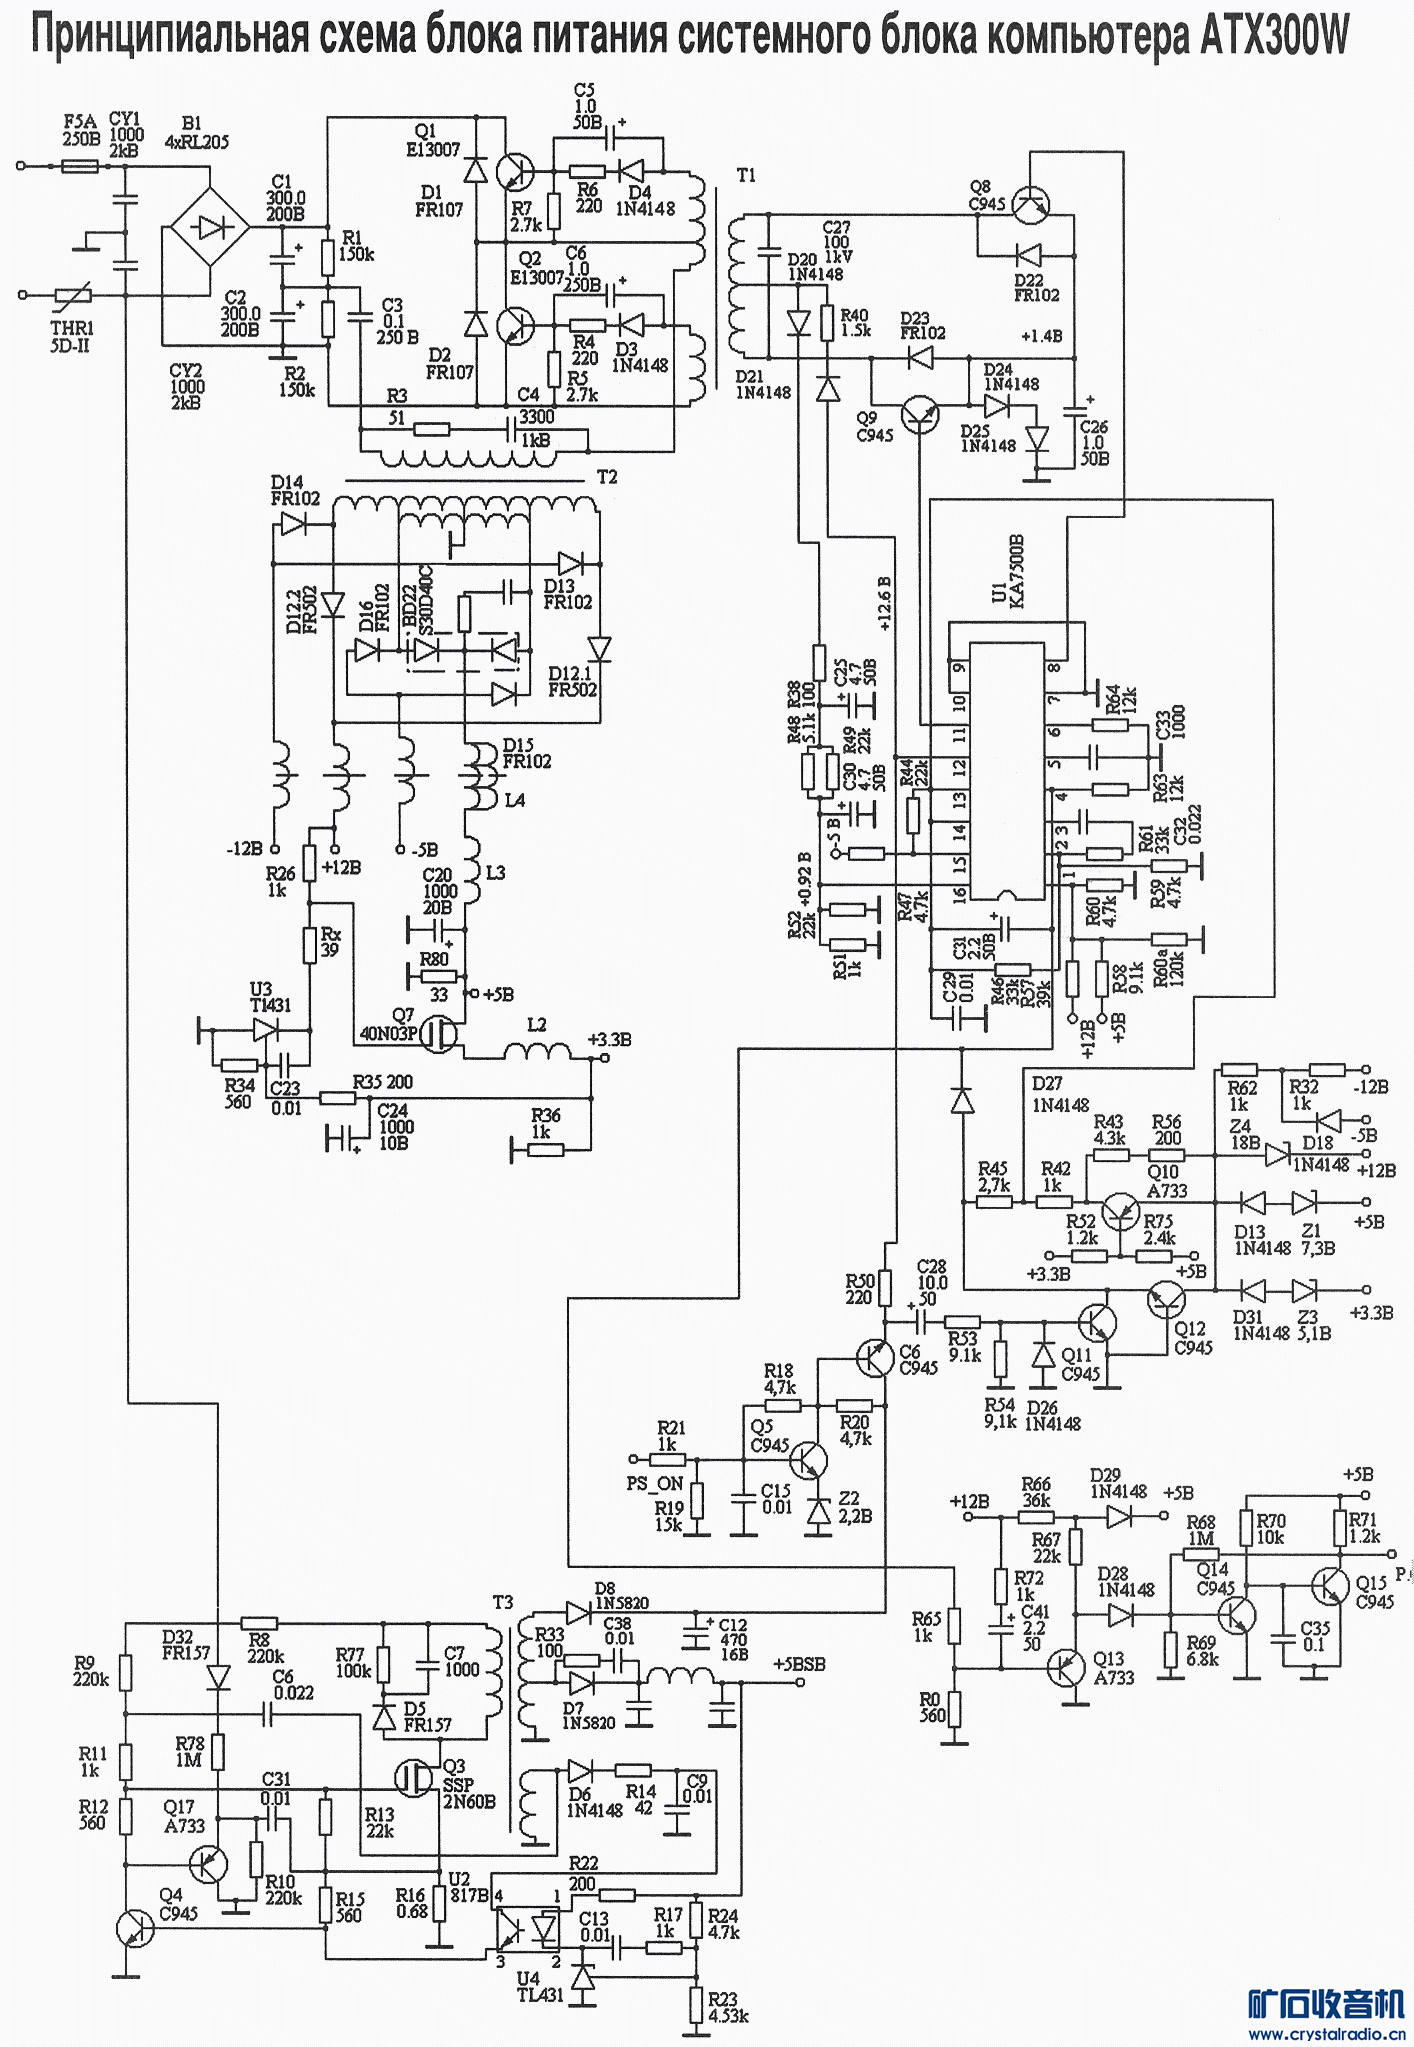 9款tl494 ka7500b构架的atx电源图纸(清晰大图)